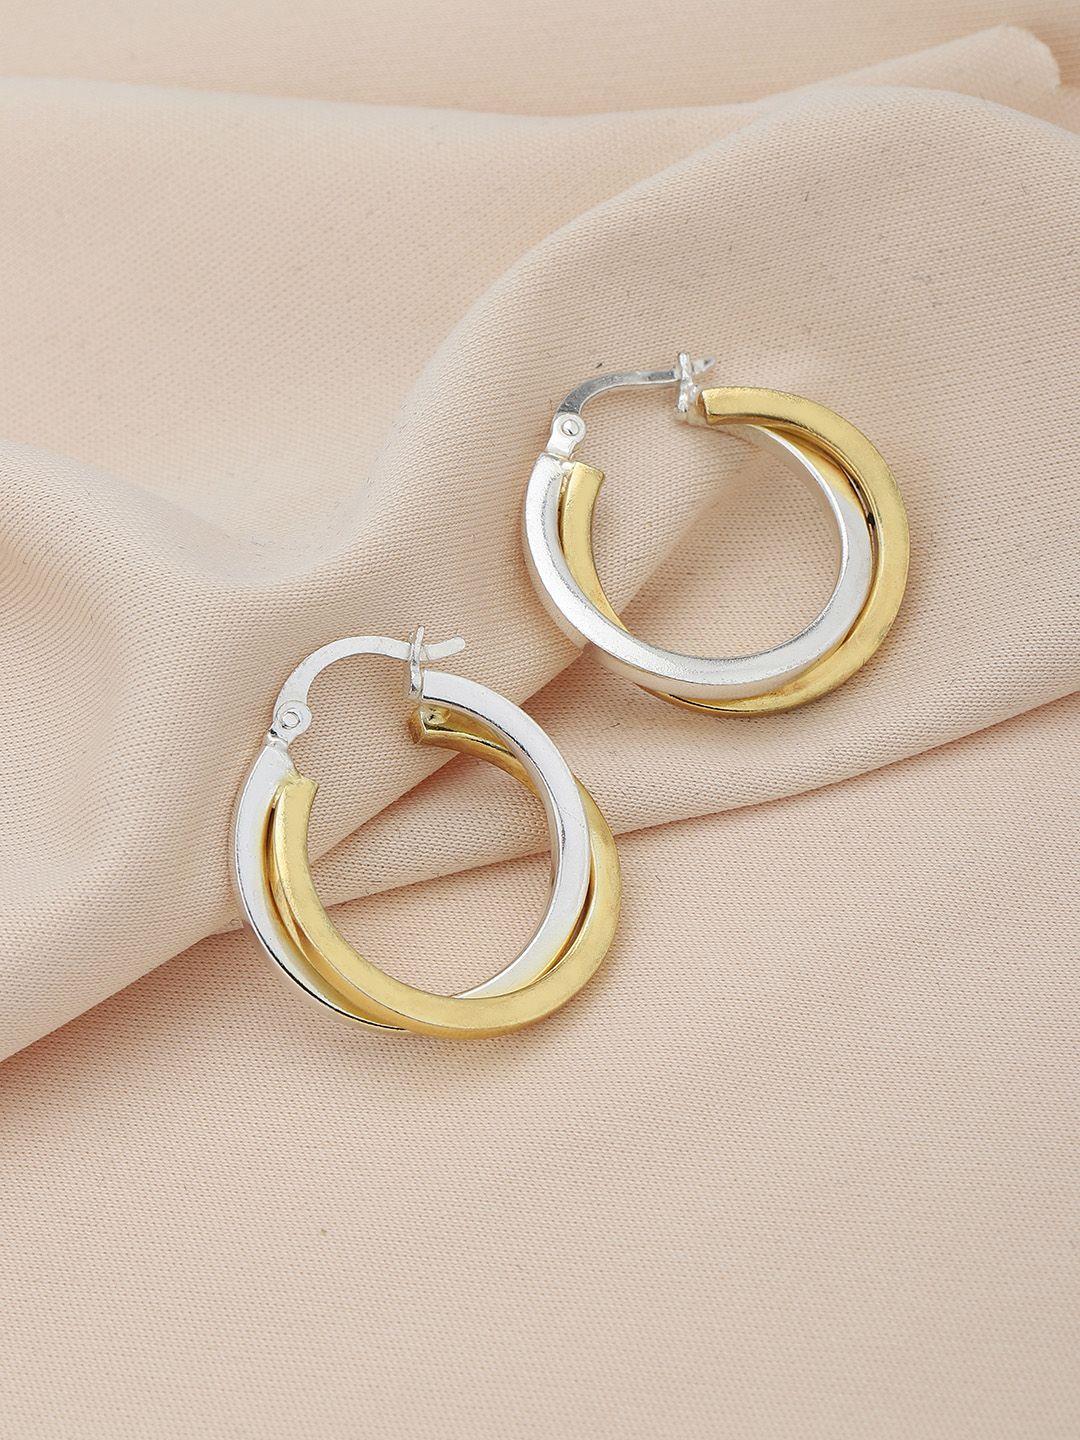 carlton-london-circular-hoop-earrings